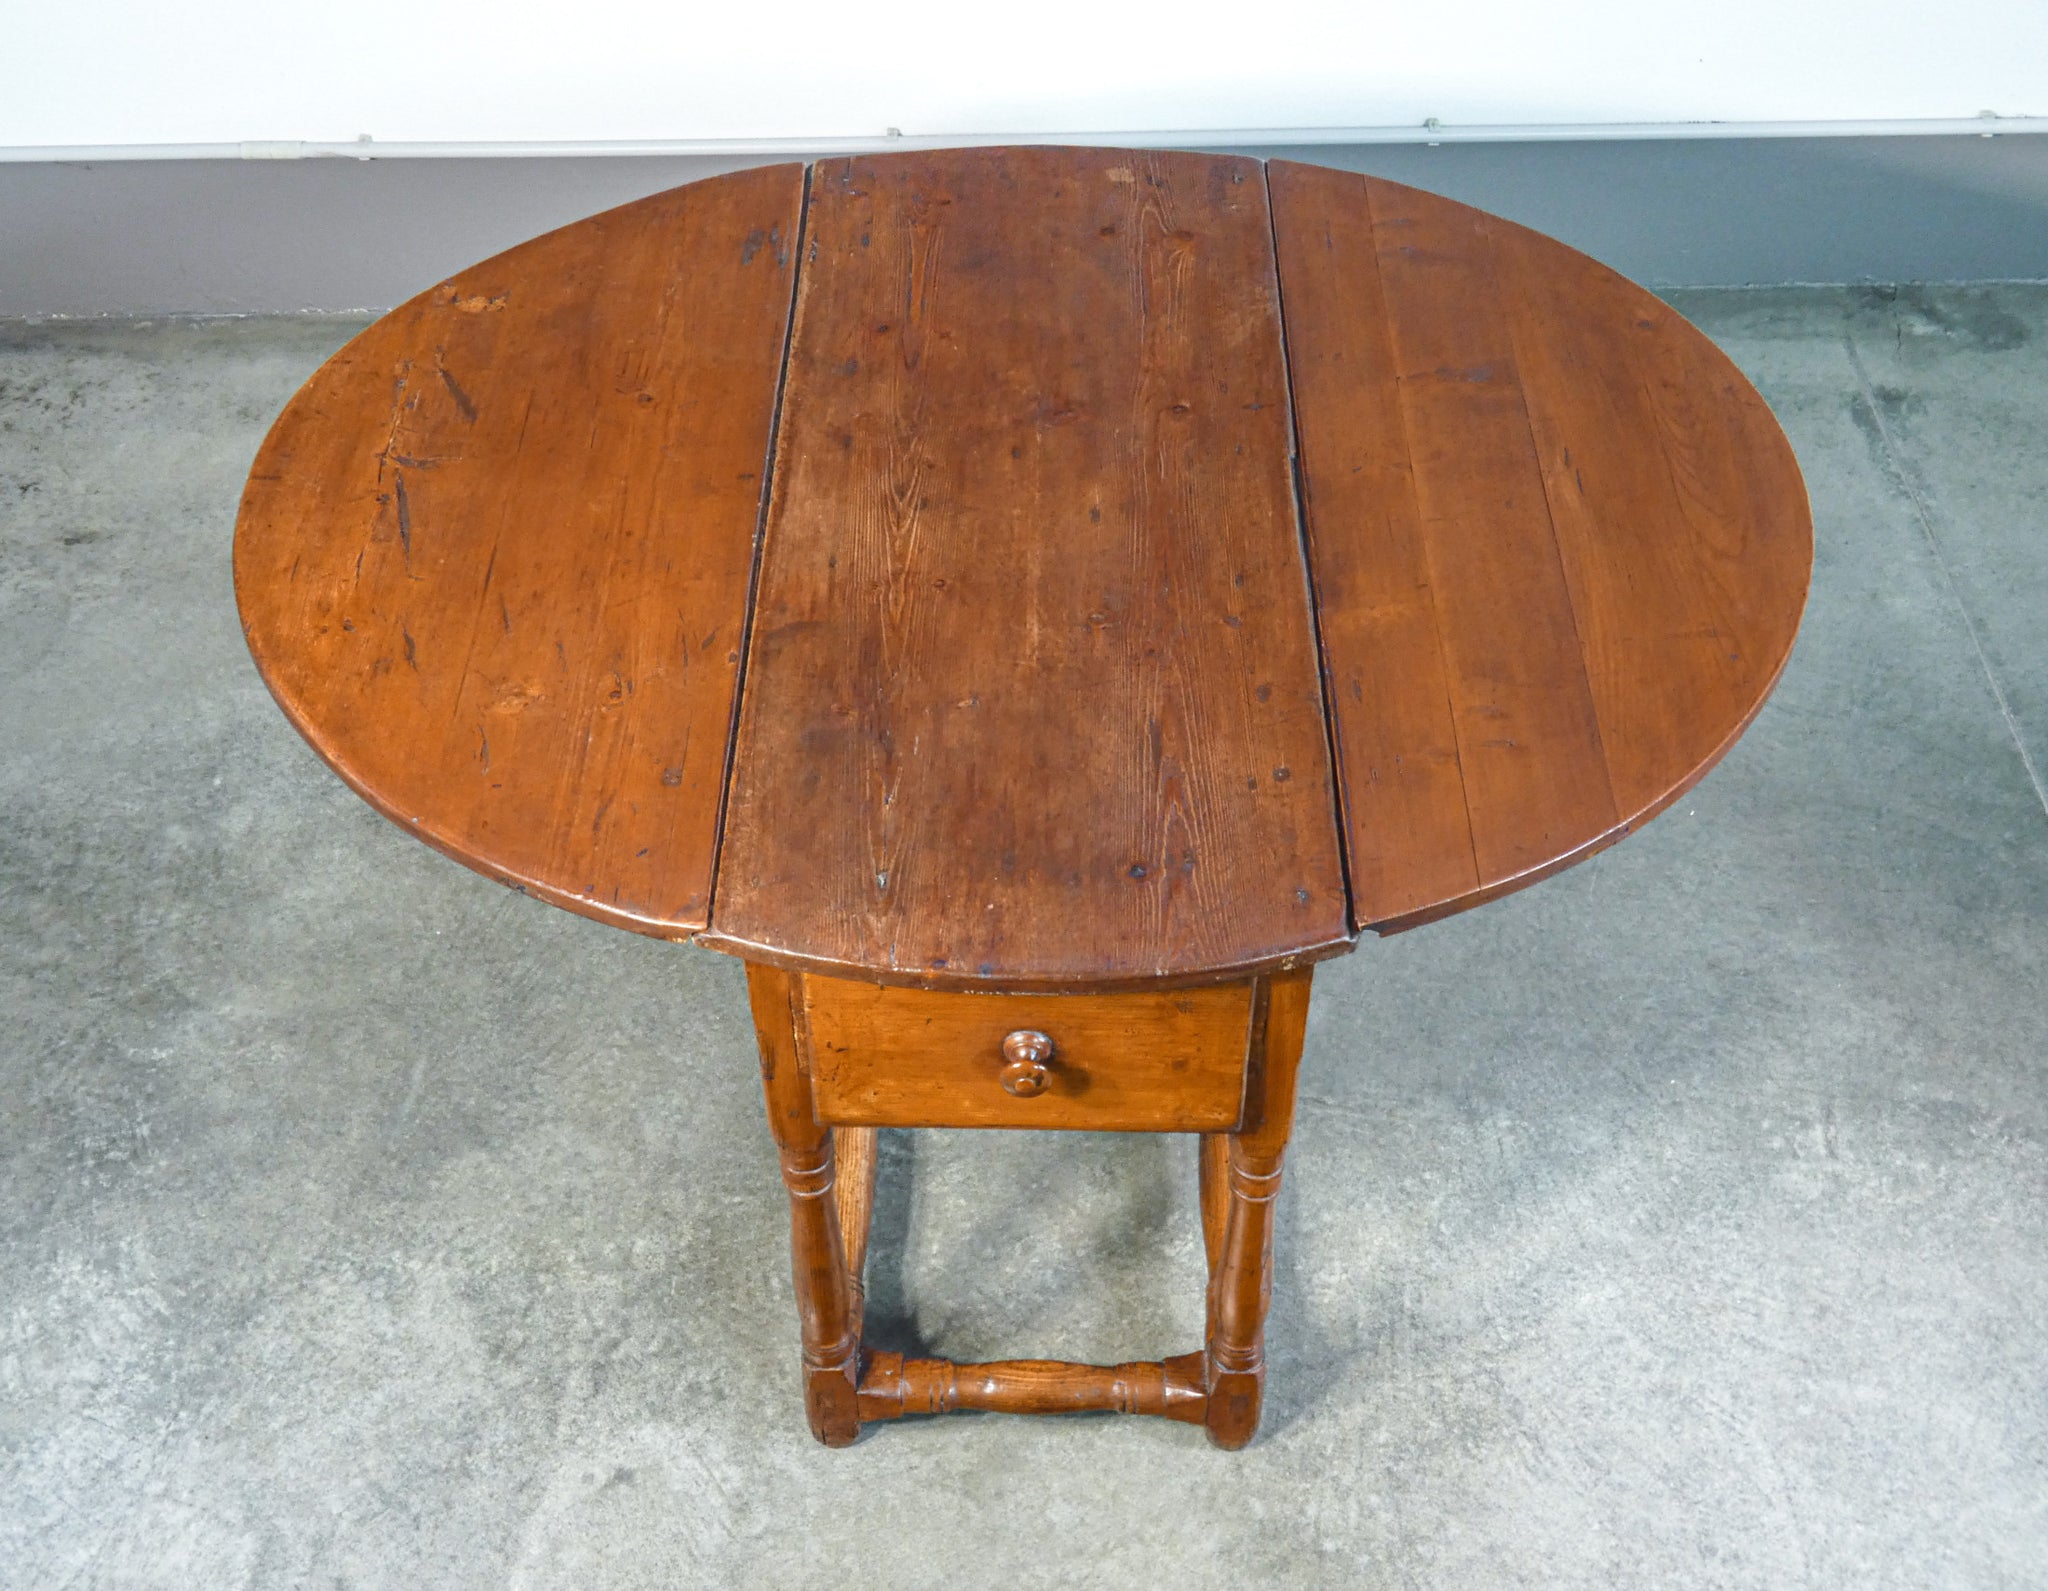 tavolo a bandelle epoca 1800 legno massello abete 2 cassetti ovale antico